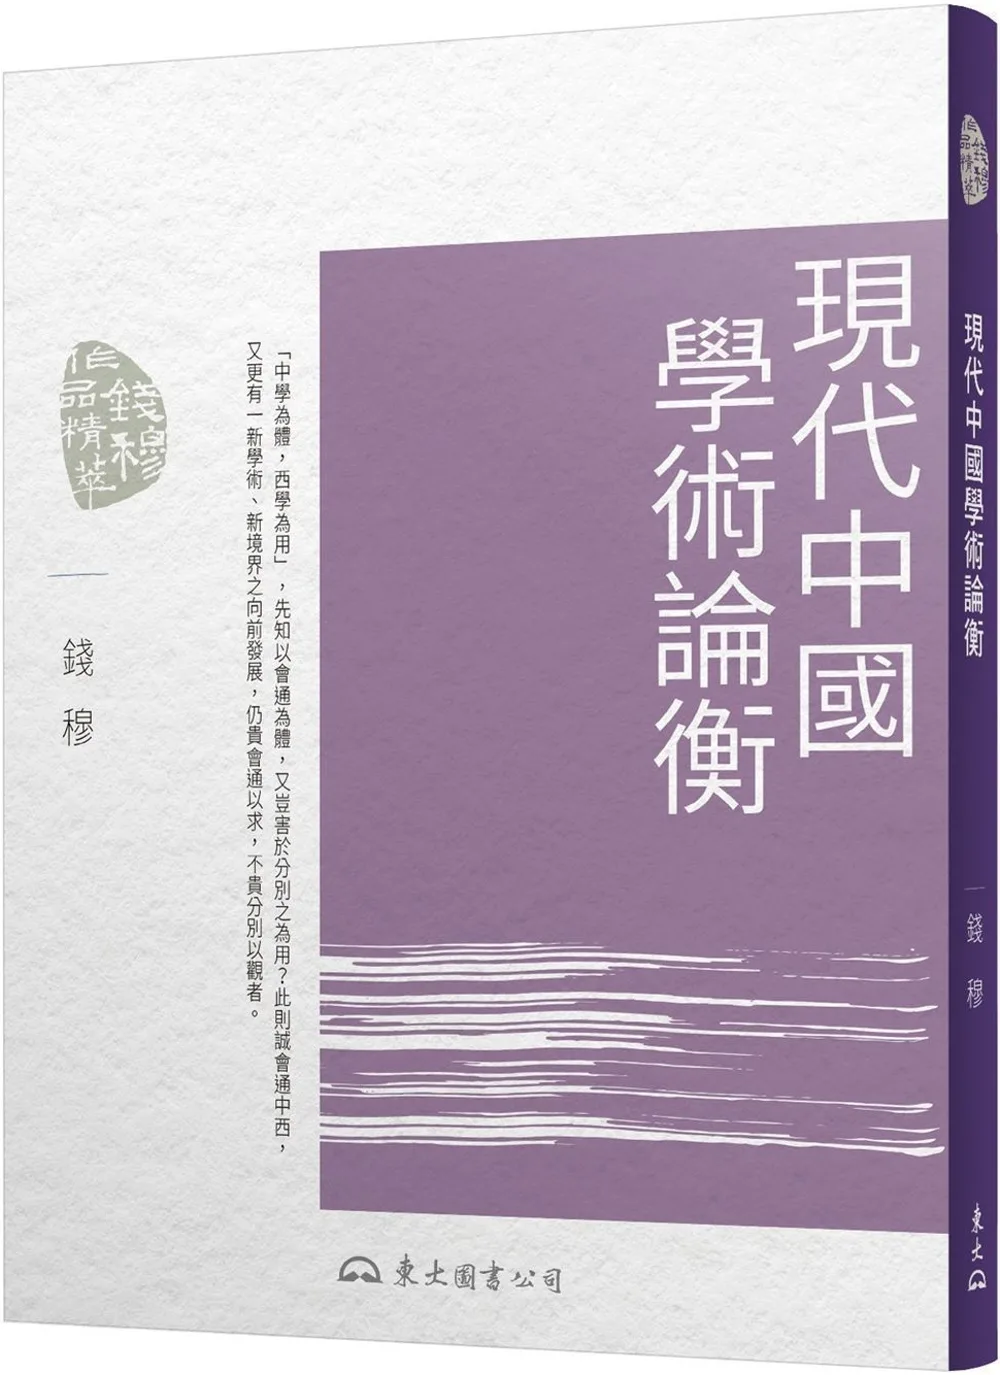 現代中國學術論衡(三版)